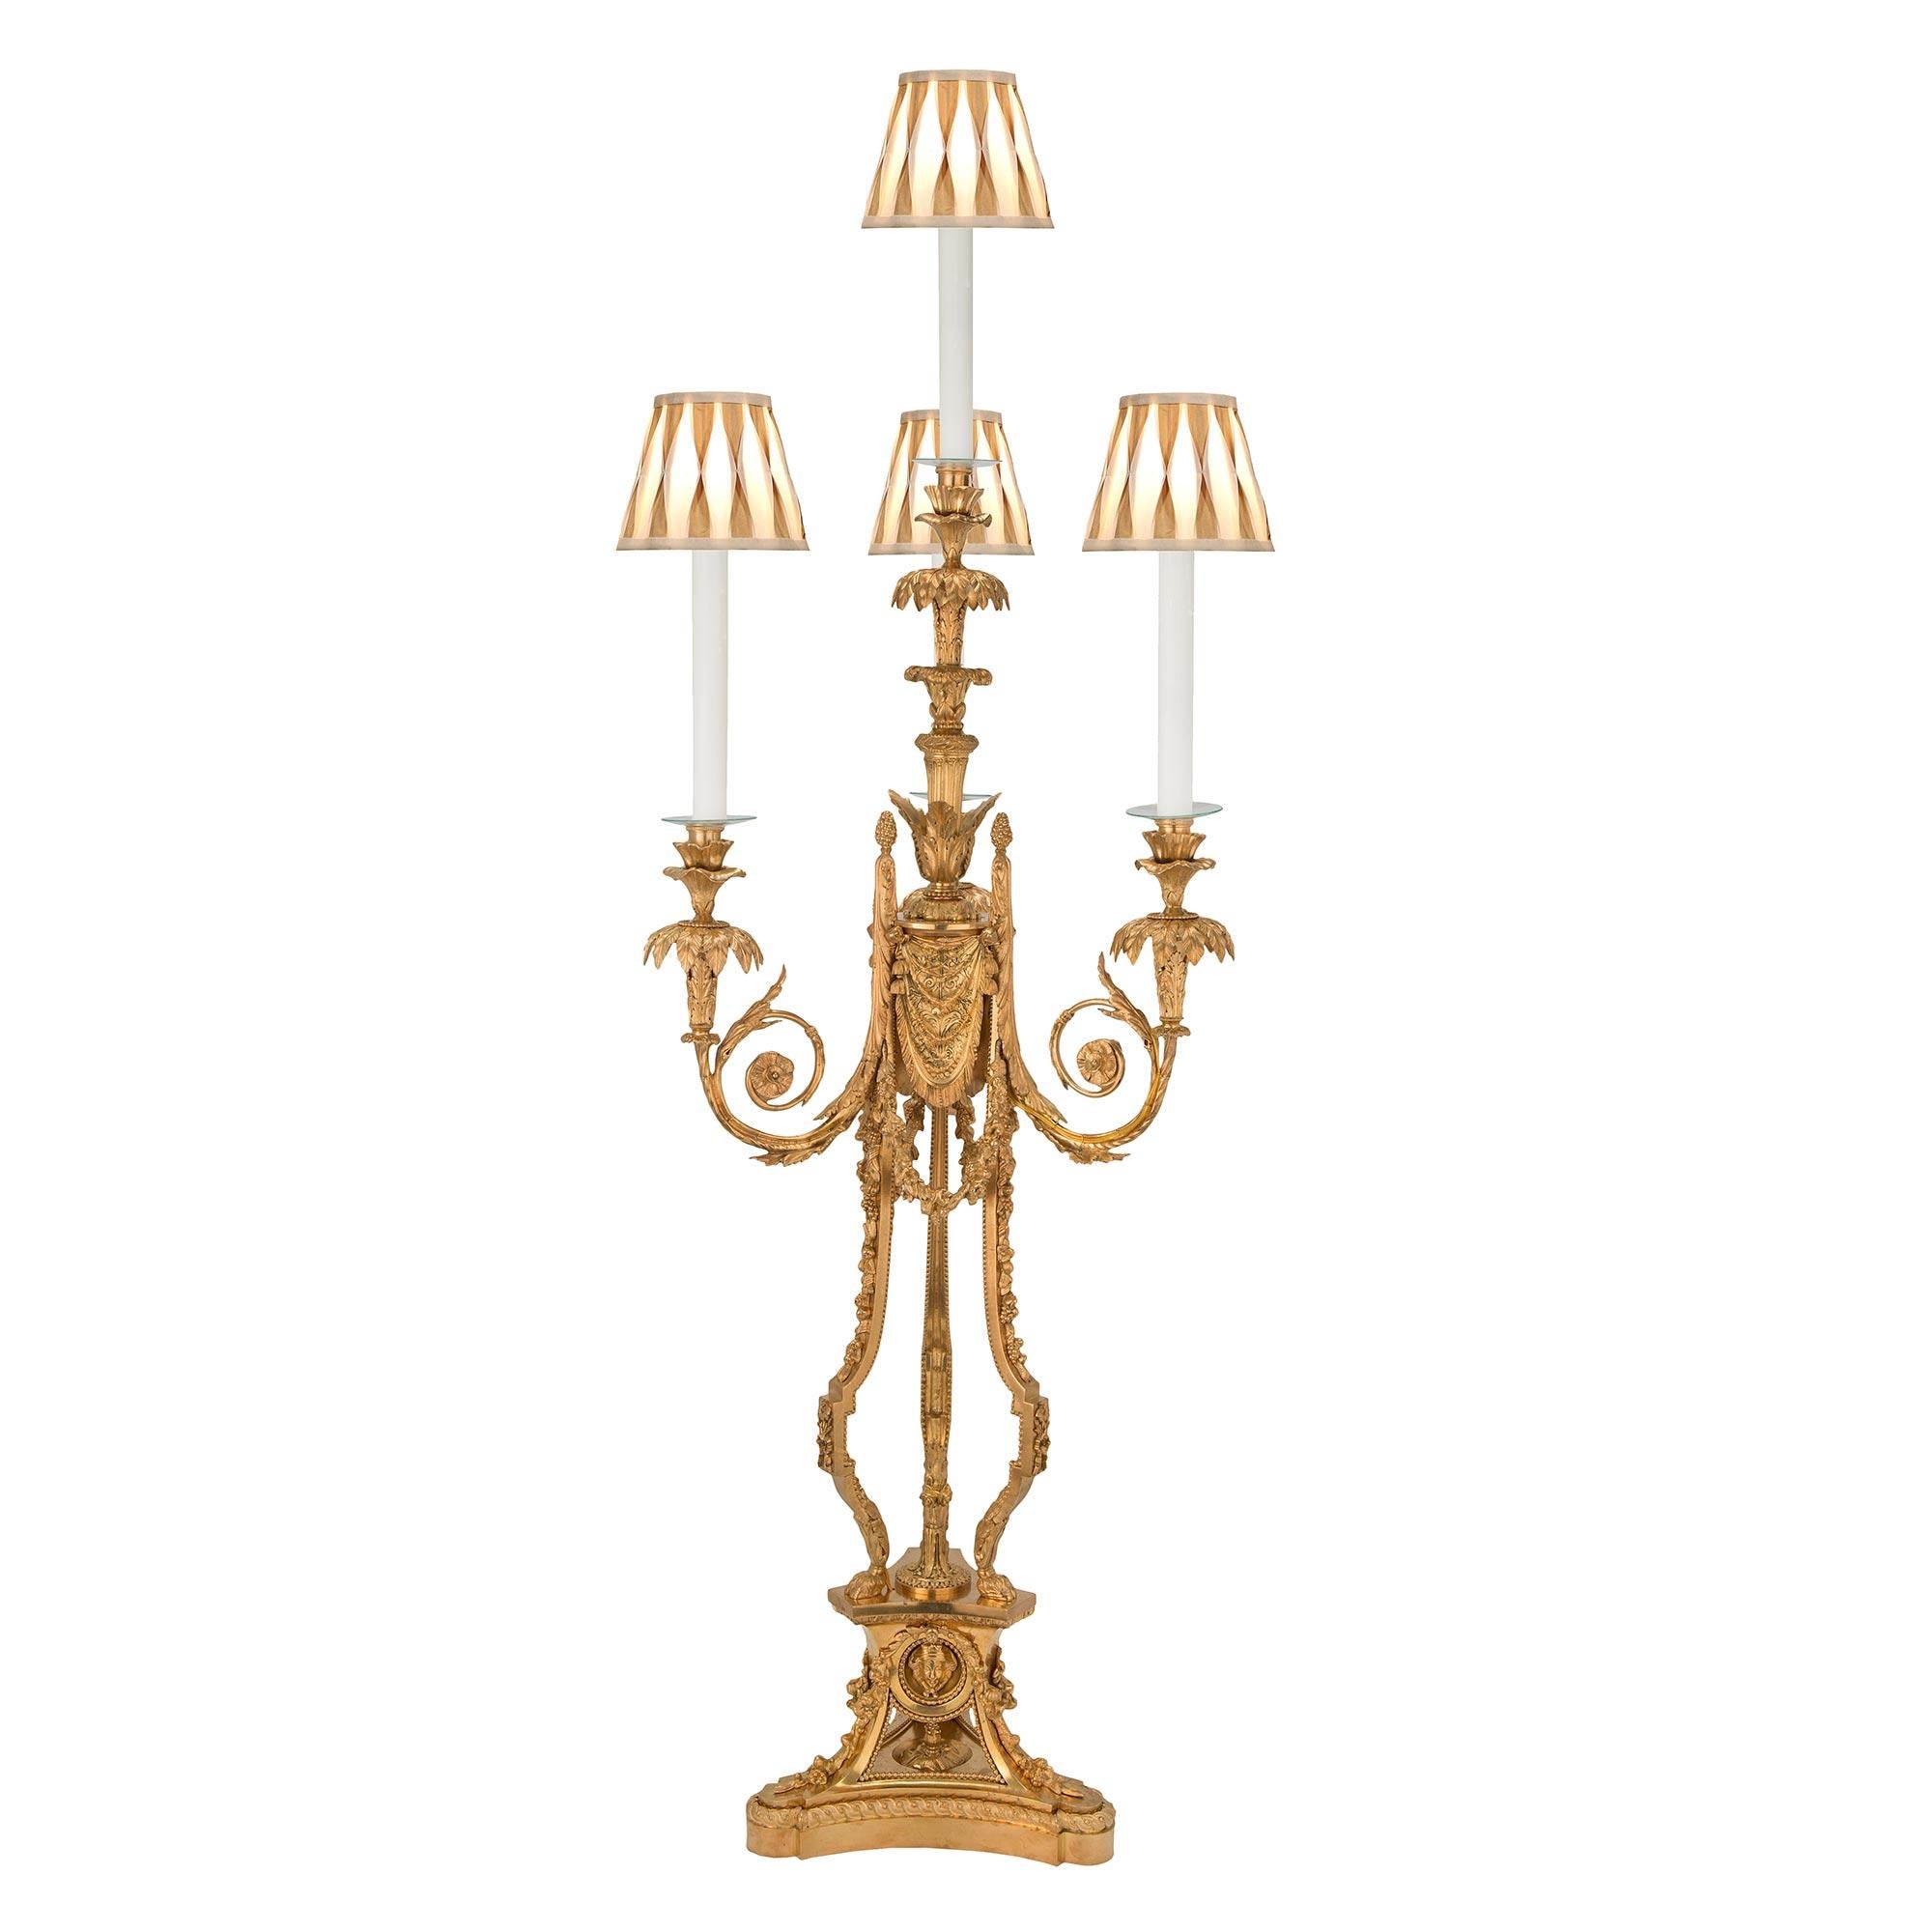 Une paire étonnante et de très grande taille de candélabres en bronze doré de style Louis XVI du début du XIXe siècle, montés en lampe d'après un modèle de Pierre Gouthière. Chaque lampe est surélevée par une base de forme triangulaire aux coins